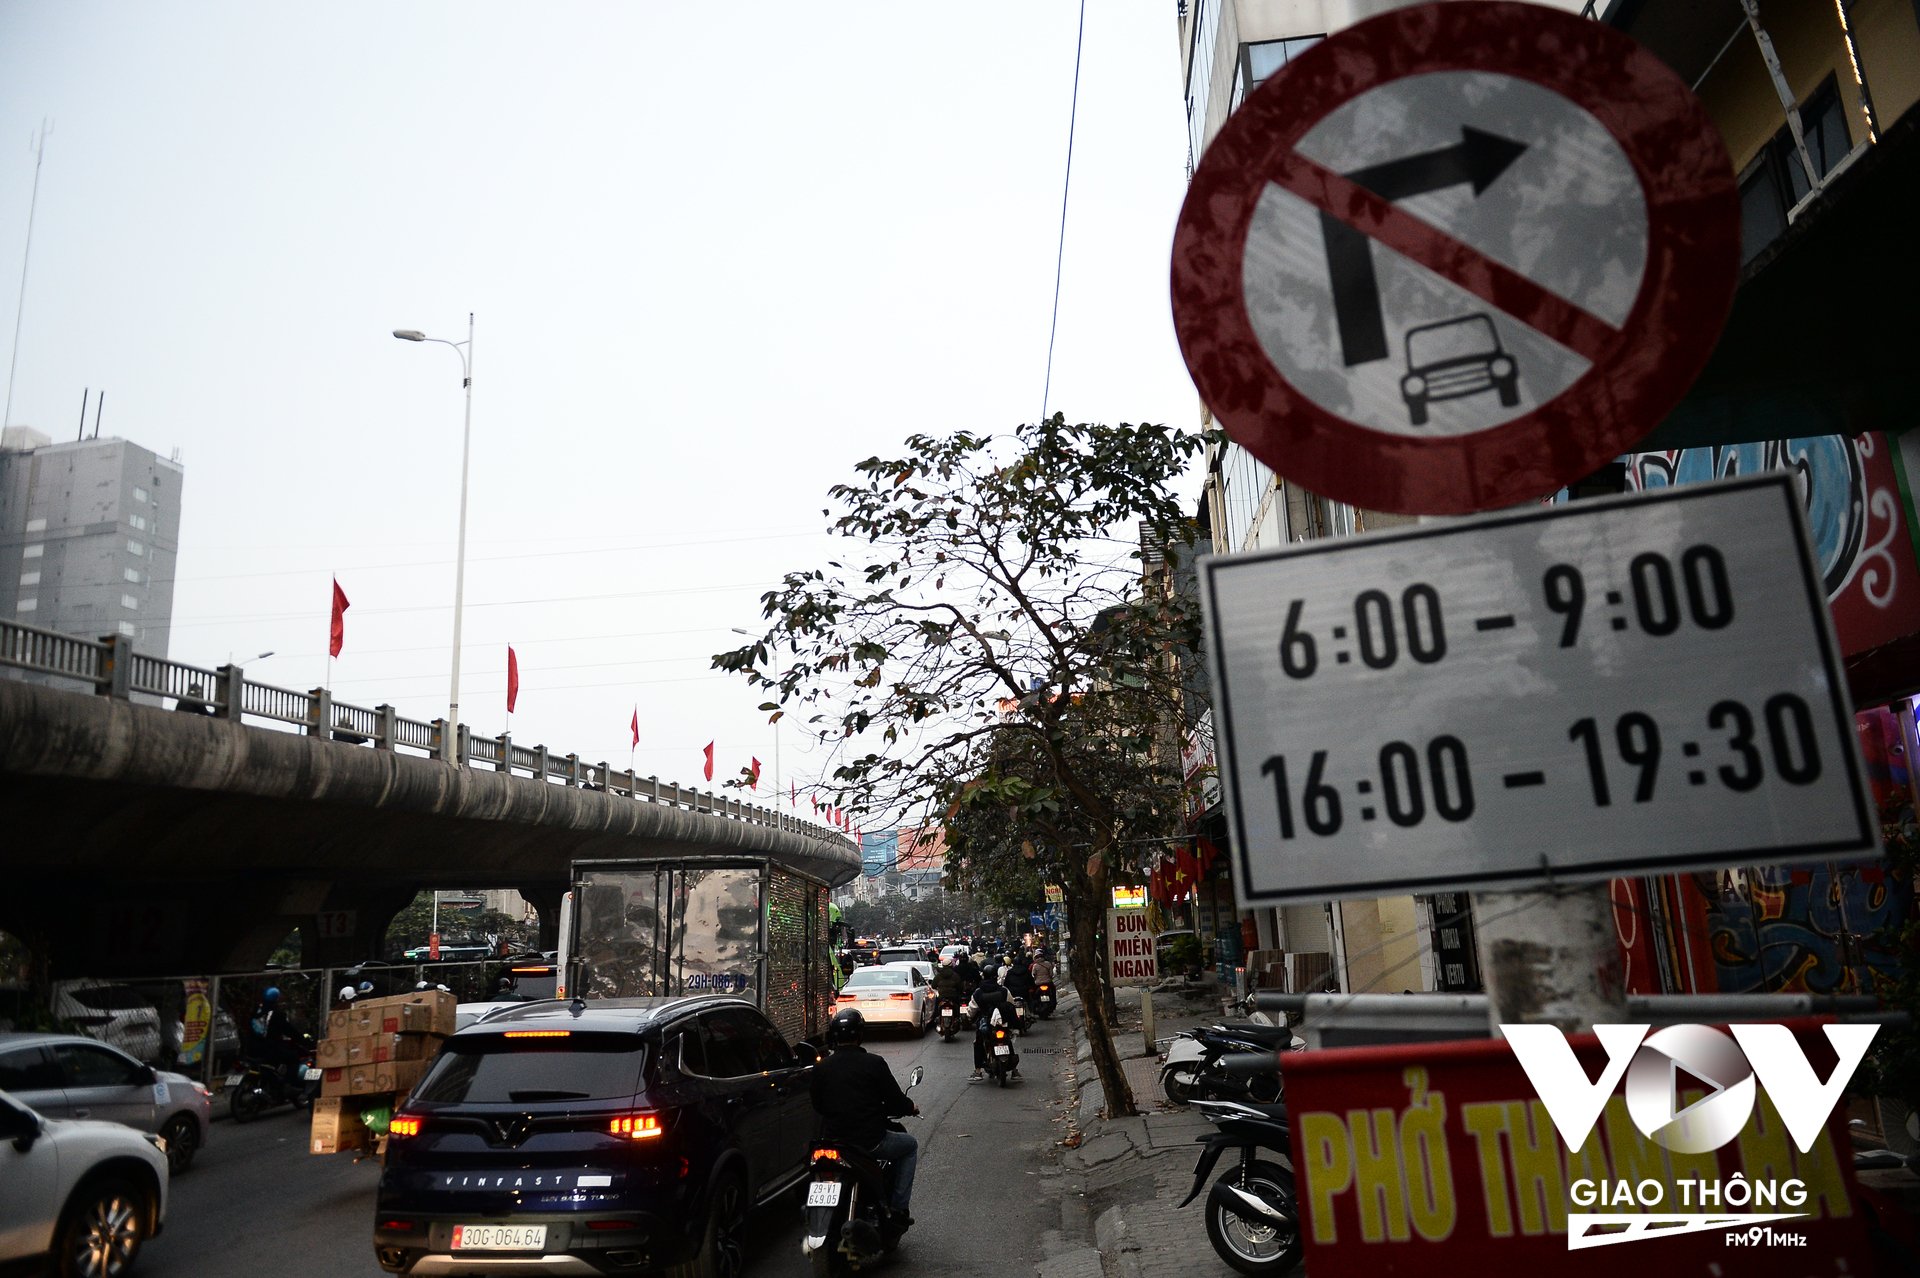 Mặc dù khu vực đầu ngõ 622 Minh Khai đã có biển cấm ô tô rẽ phải theo giờ, tuy nhiên vẫn xuất hiện tình trạng một số xe ô tô bất chấp biển báo rẽ vào ngõ này trong khung giờ cấm.